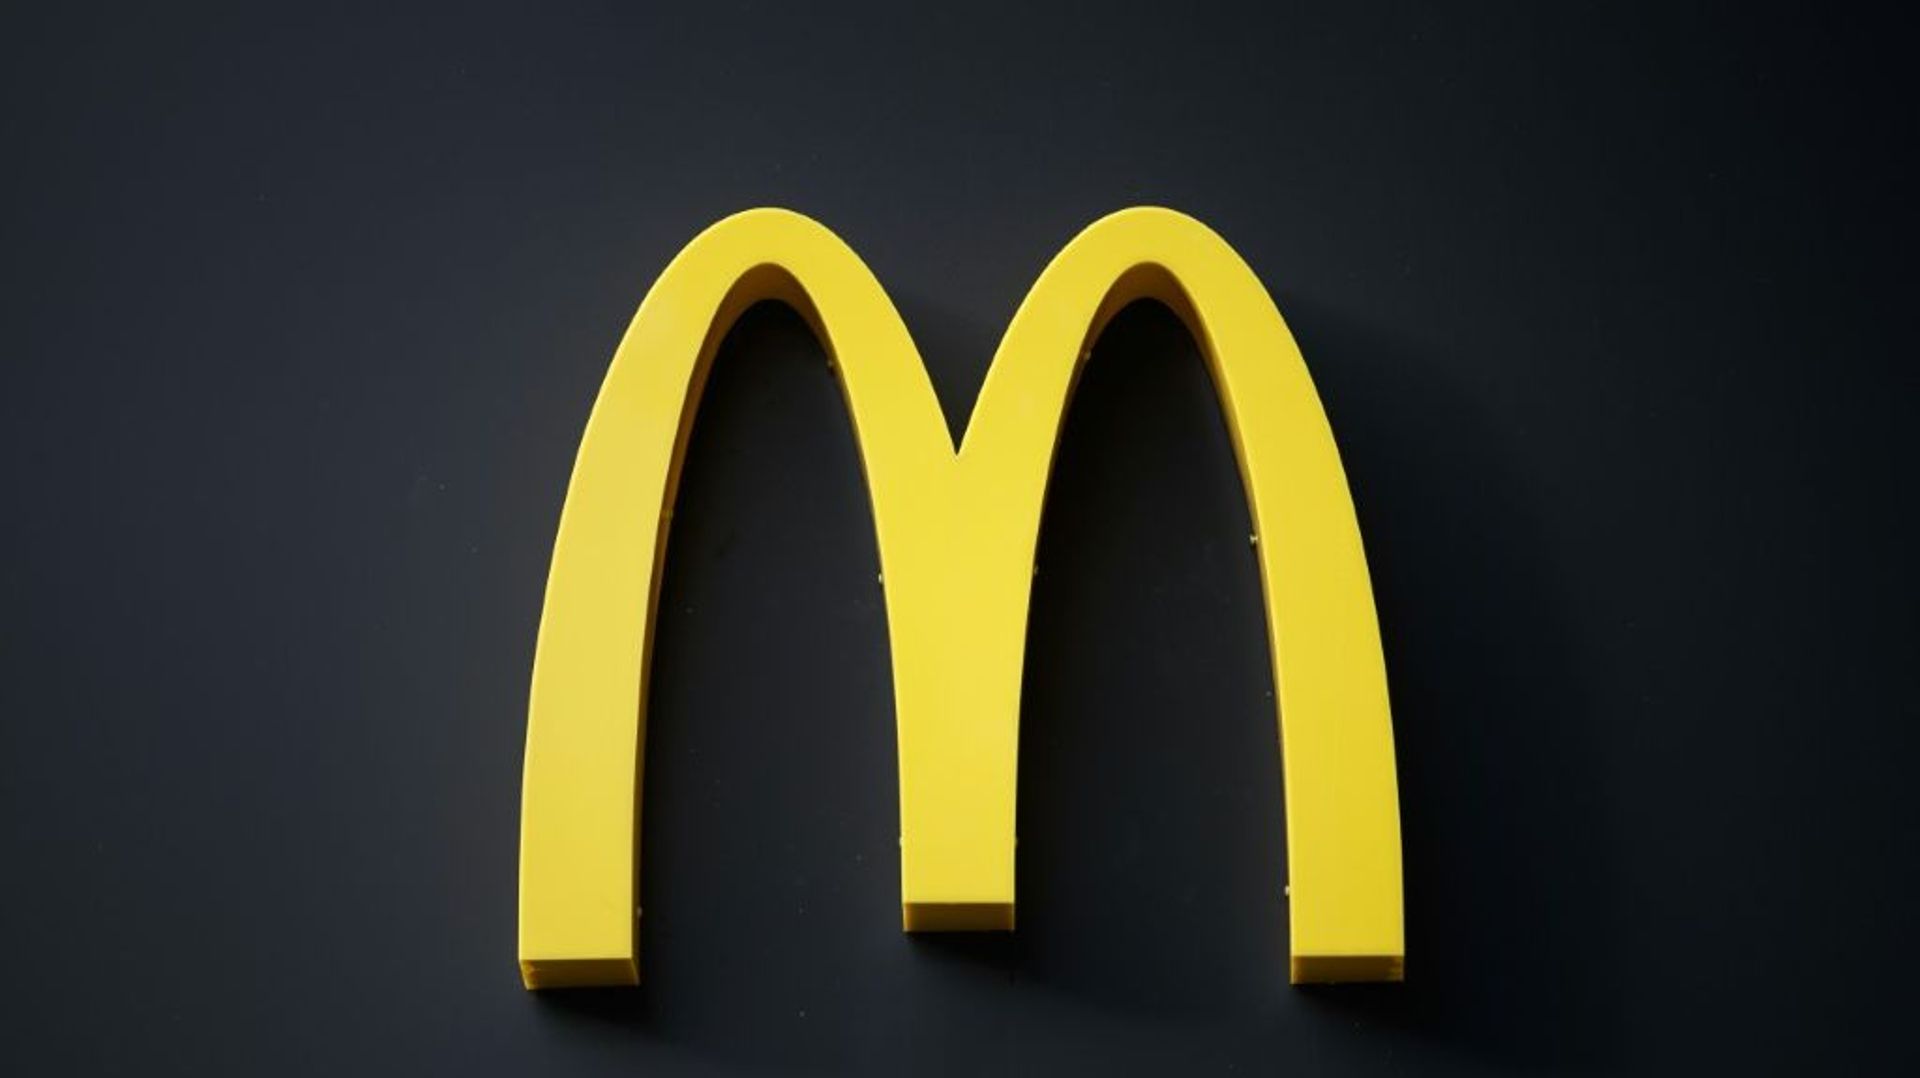 Le géant de la restauration rapide McDonald’s a accepté de payer plus d’un milliard d’euros d’amende en France pour éviter des poursuites pénales pour fraude fiscale, dans le cadre d’un accord avec le parquet national financier